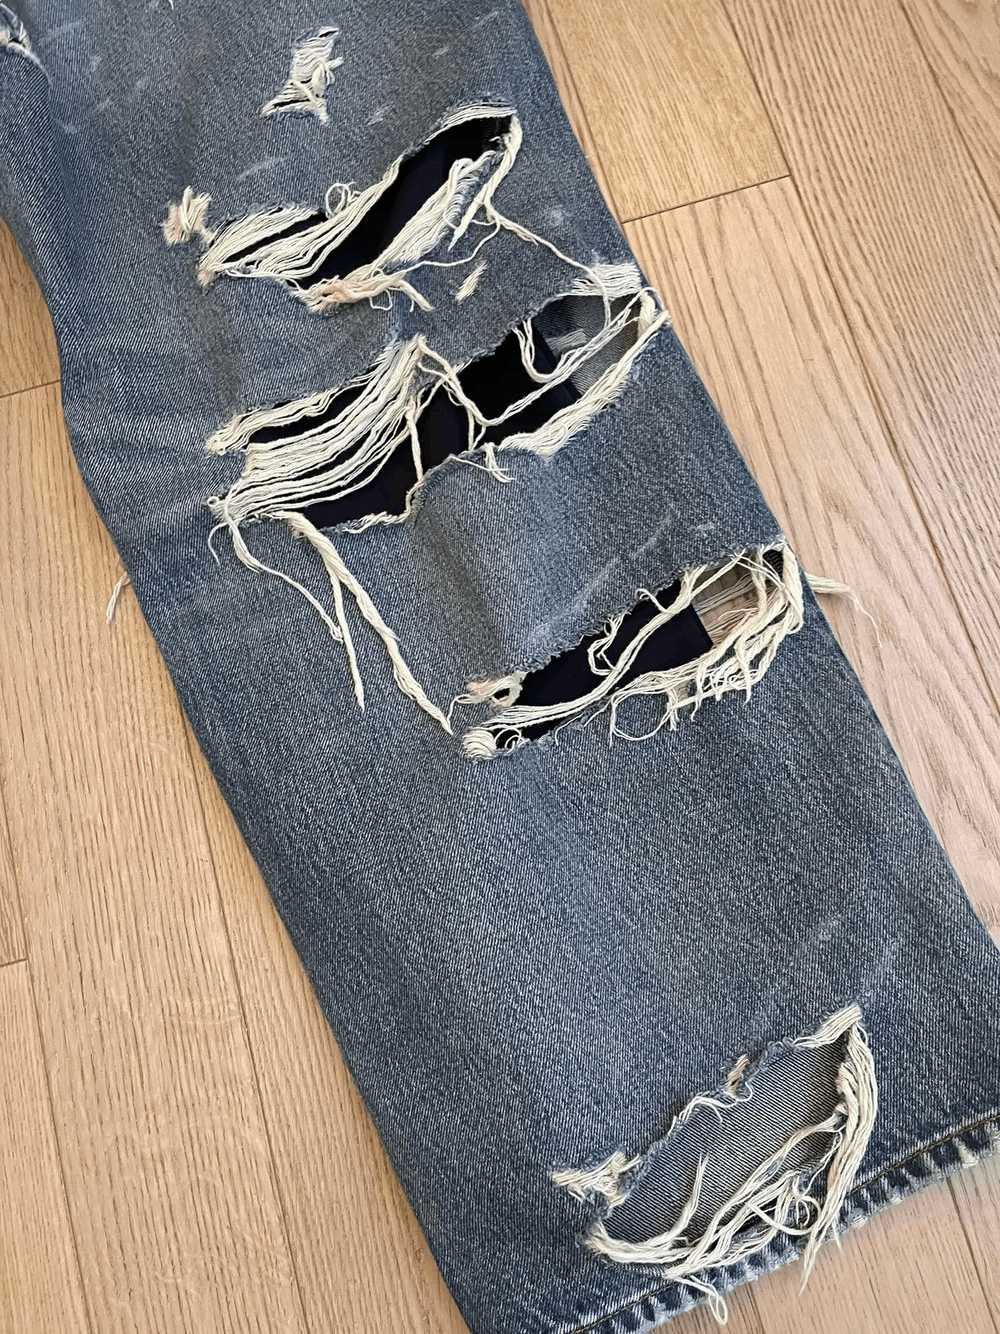 Balenciaga Balenciaga Destroyed Jeans RARE - image 7